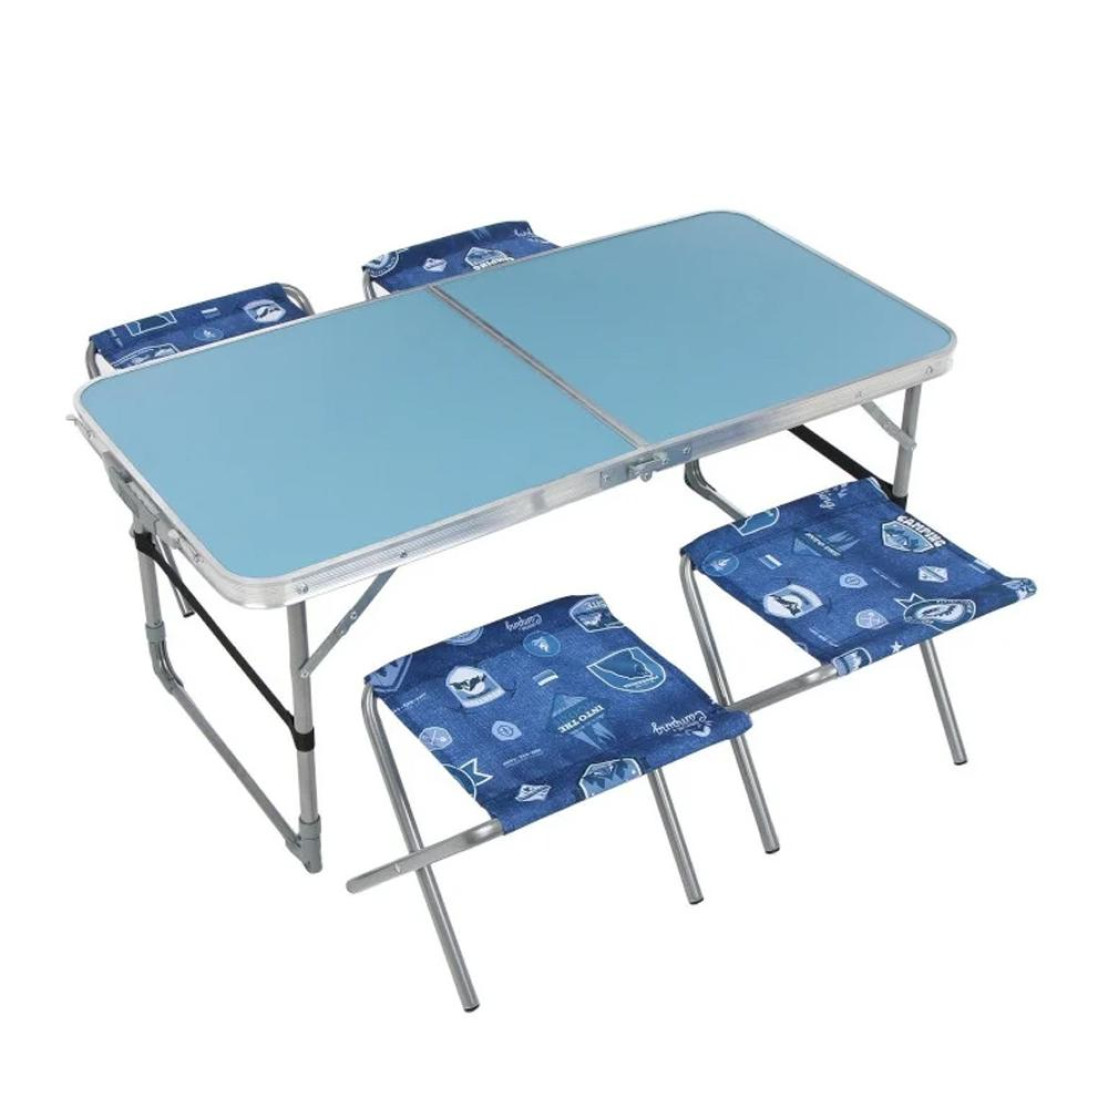 набор стол складной 4 стула дачных складных сст к3